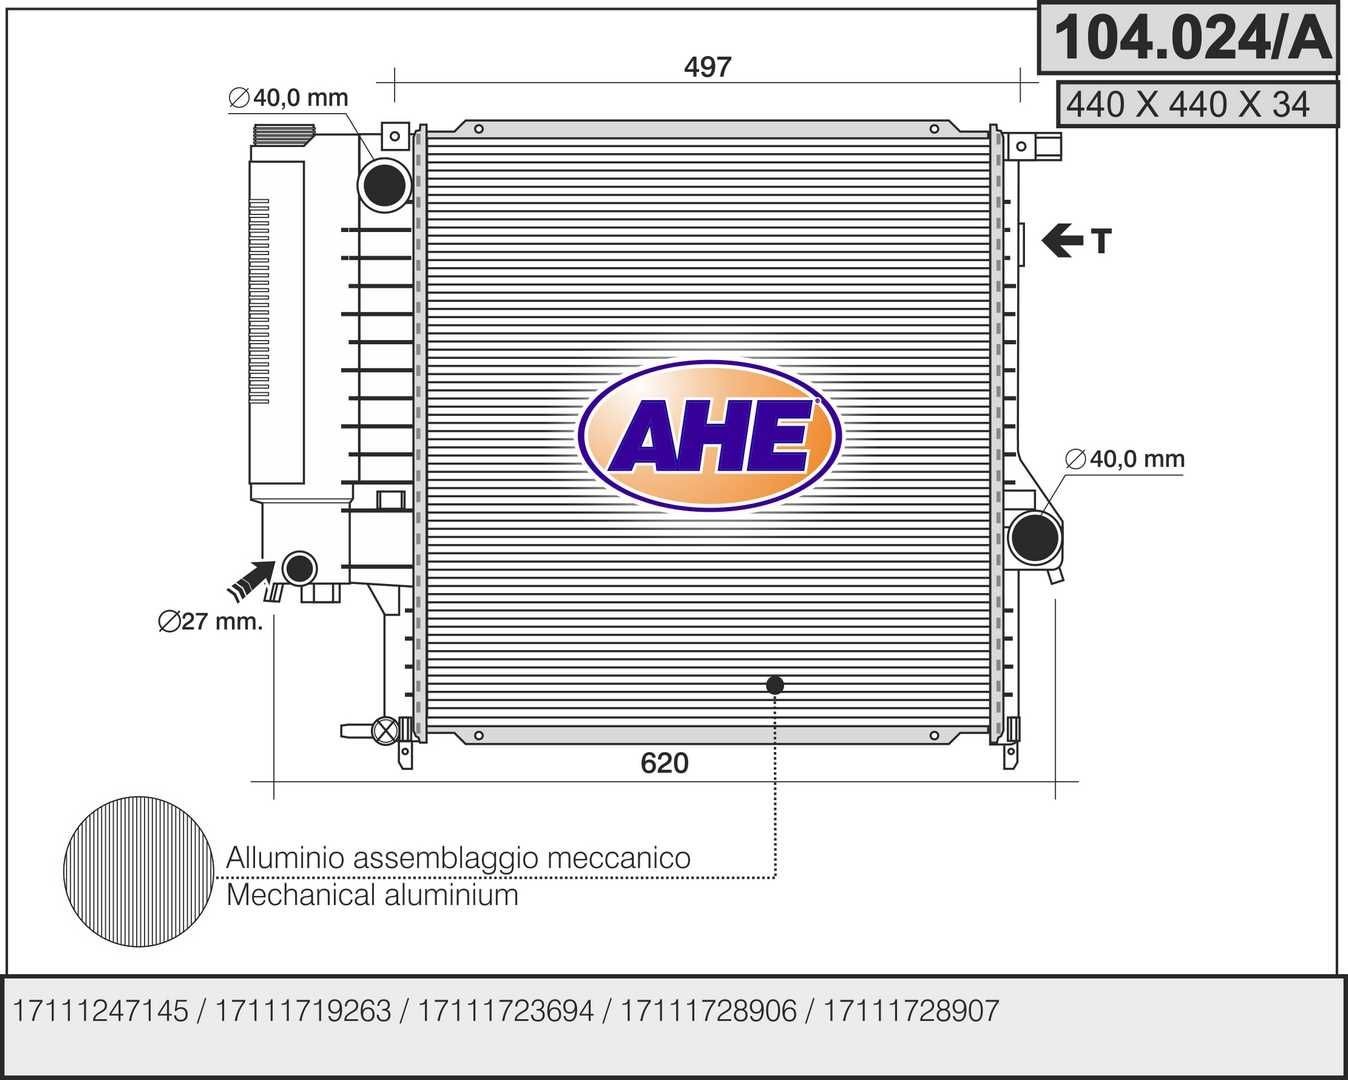 AHE 104.024/A Engine radiator 1.247.145